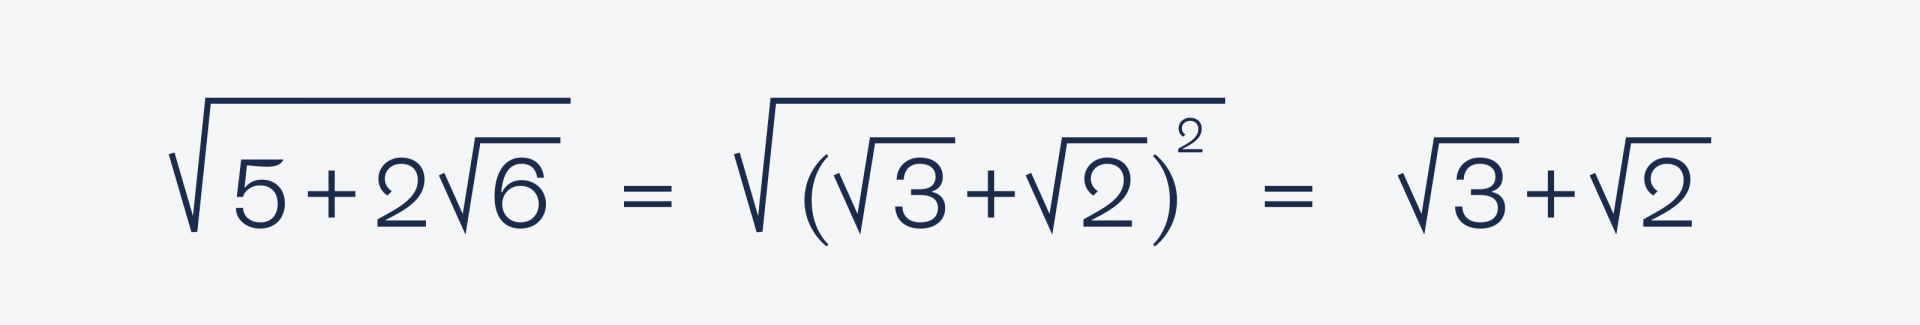 Сборник простых задач по математике, которые кажутся сложными